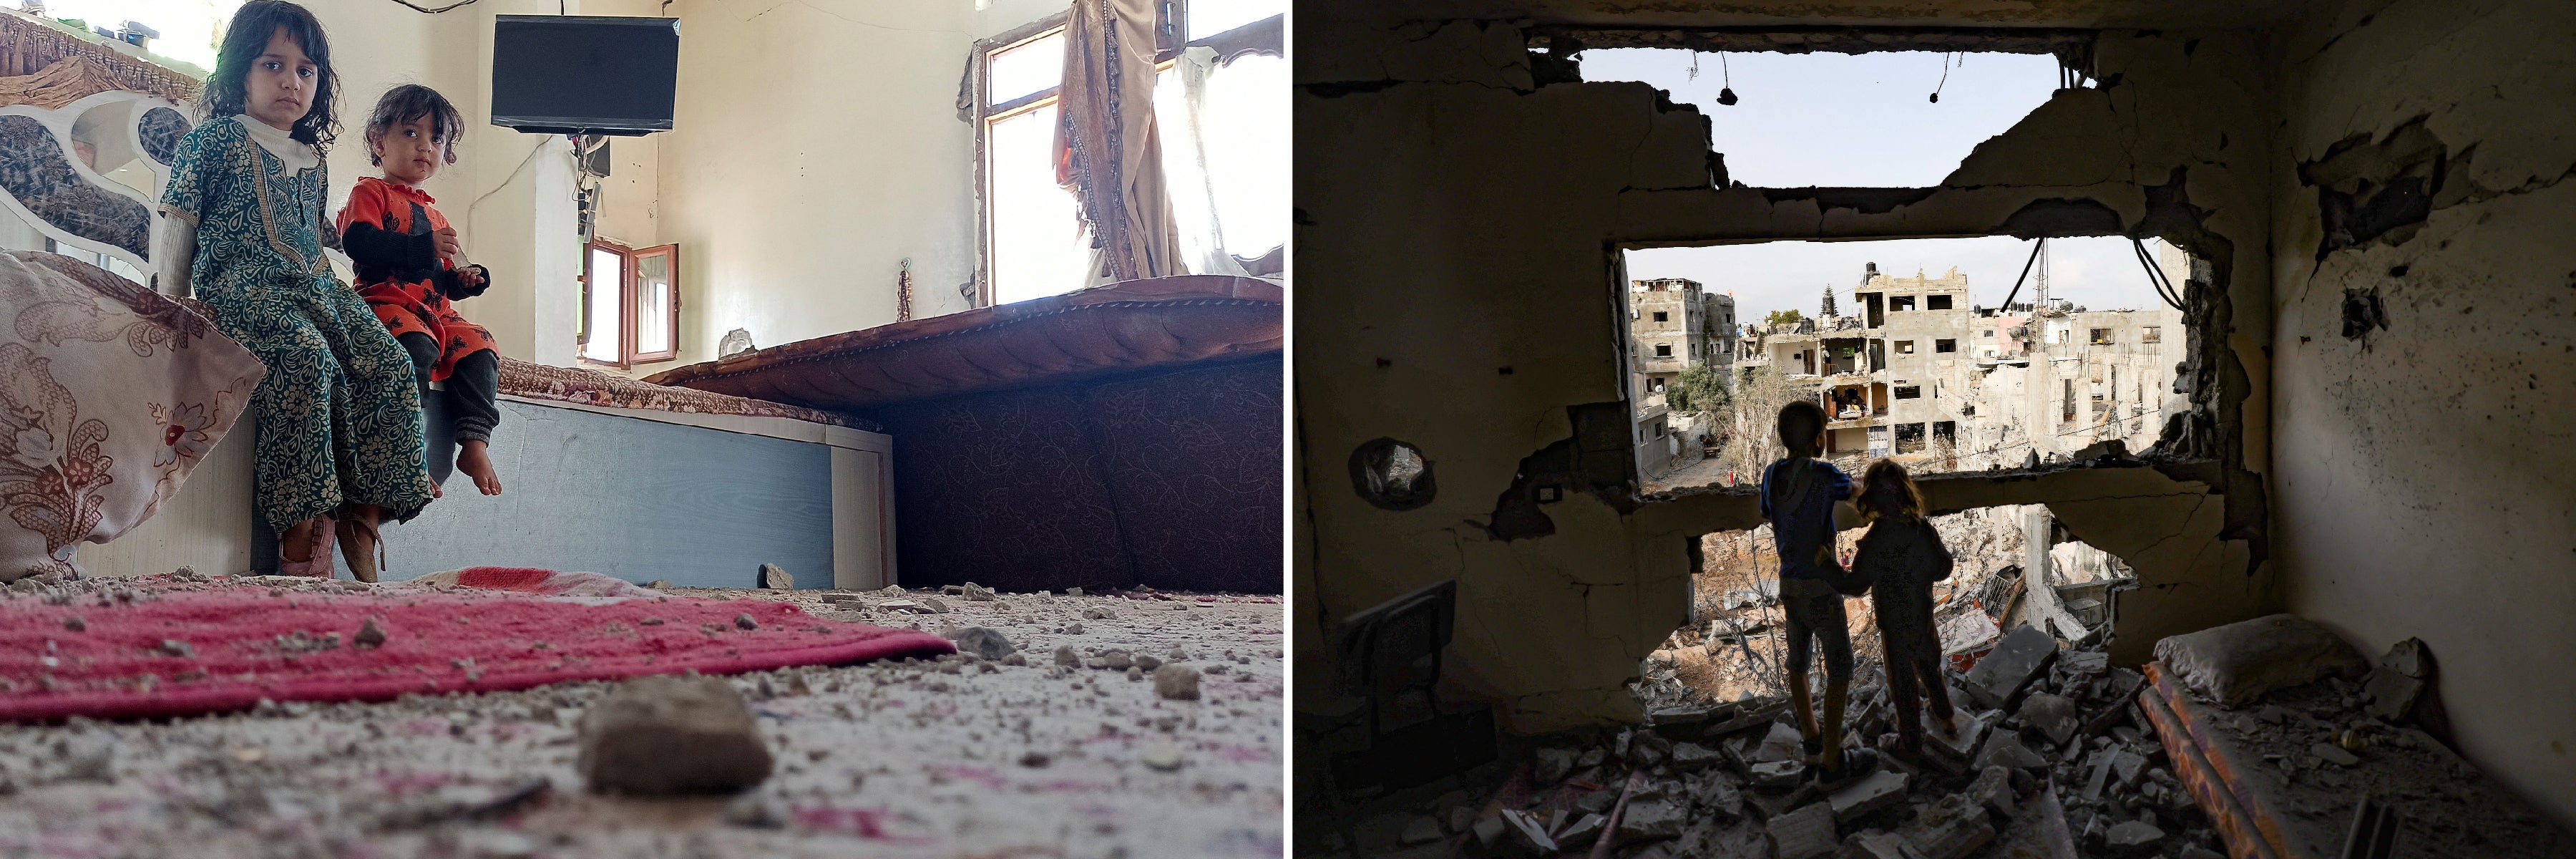 Слева: Девочки в спальне своего дома, поврежденного в результате авиаударов Саудовской Аравии по близлежащему военному объекту в Сане, Йемен, 19 января 2022 года. © 2022 Халед Абдулла / Reuters. Справа: Палестинские дети, которые вернулись домой, смотрят на остатки своего дома, который был разрушен в результате израильской атаки в городе Газа 21 мая 2021 года. © 2021 Мохаммад Абед / AFP